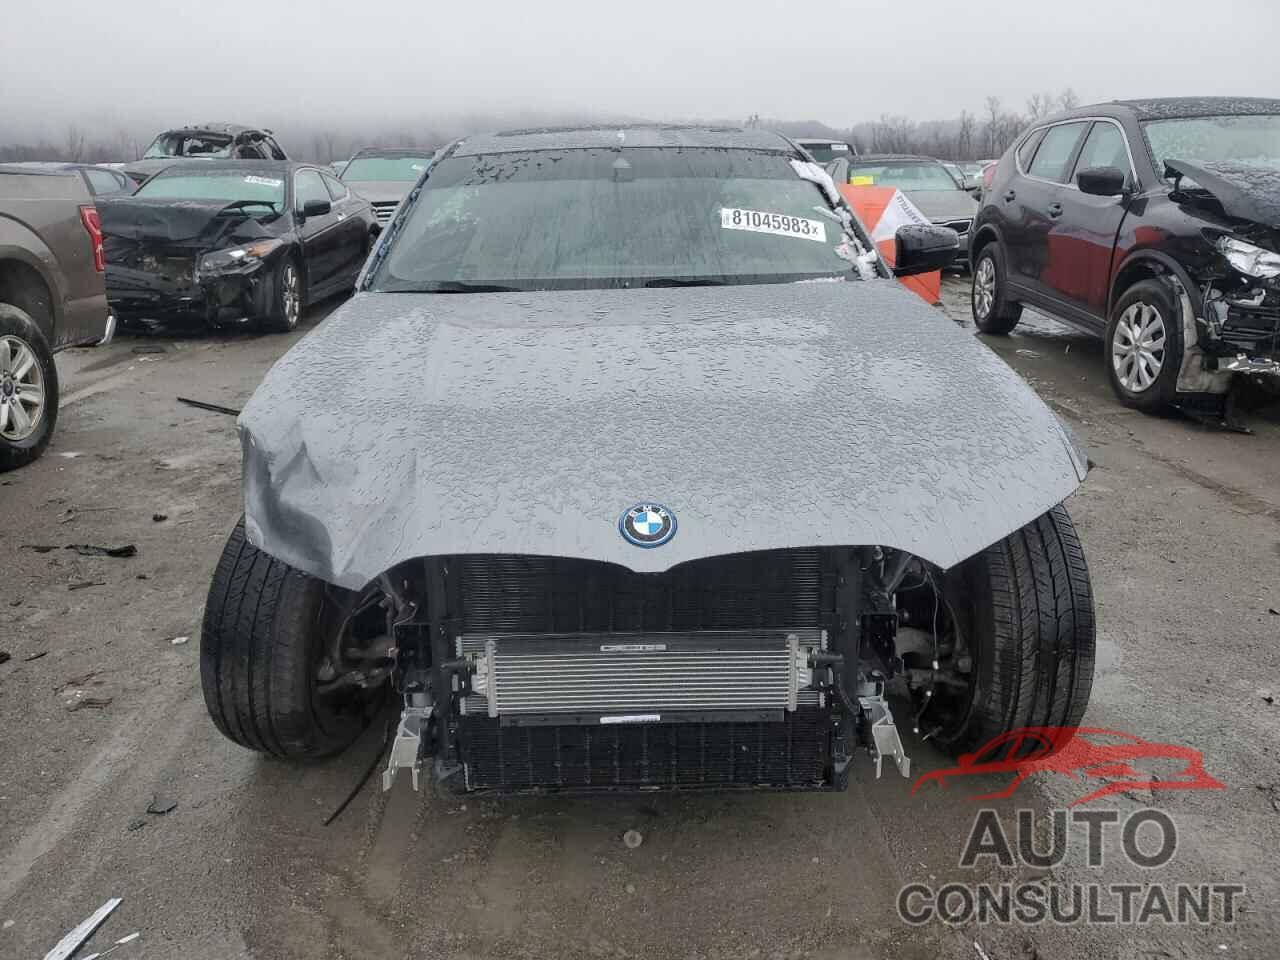 BMW 3 SERIES 2023 - 3MW39FS03P8D06402